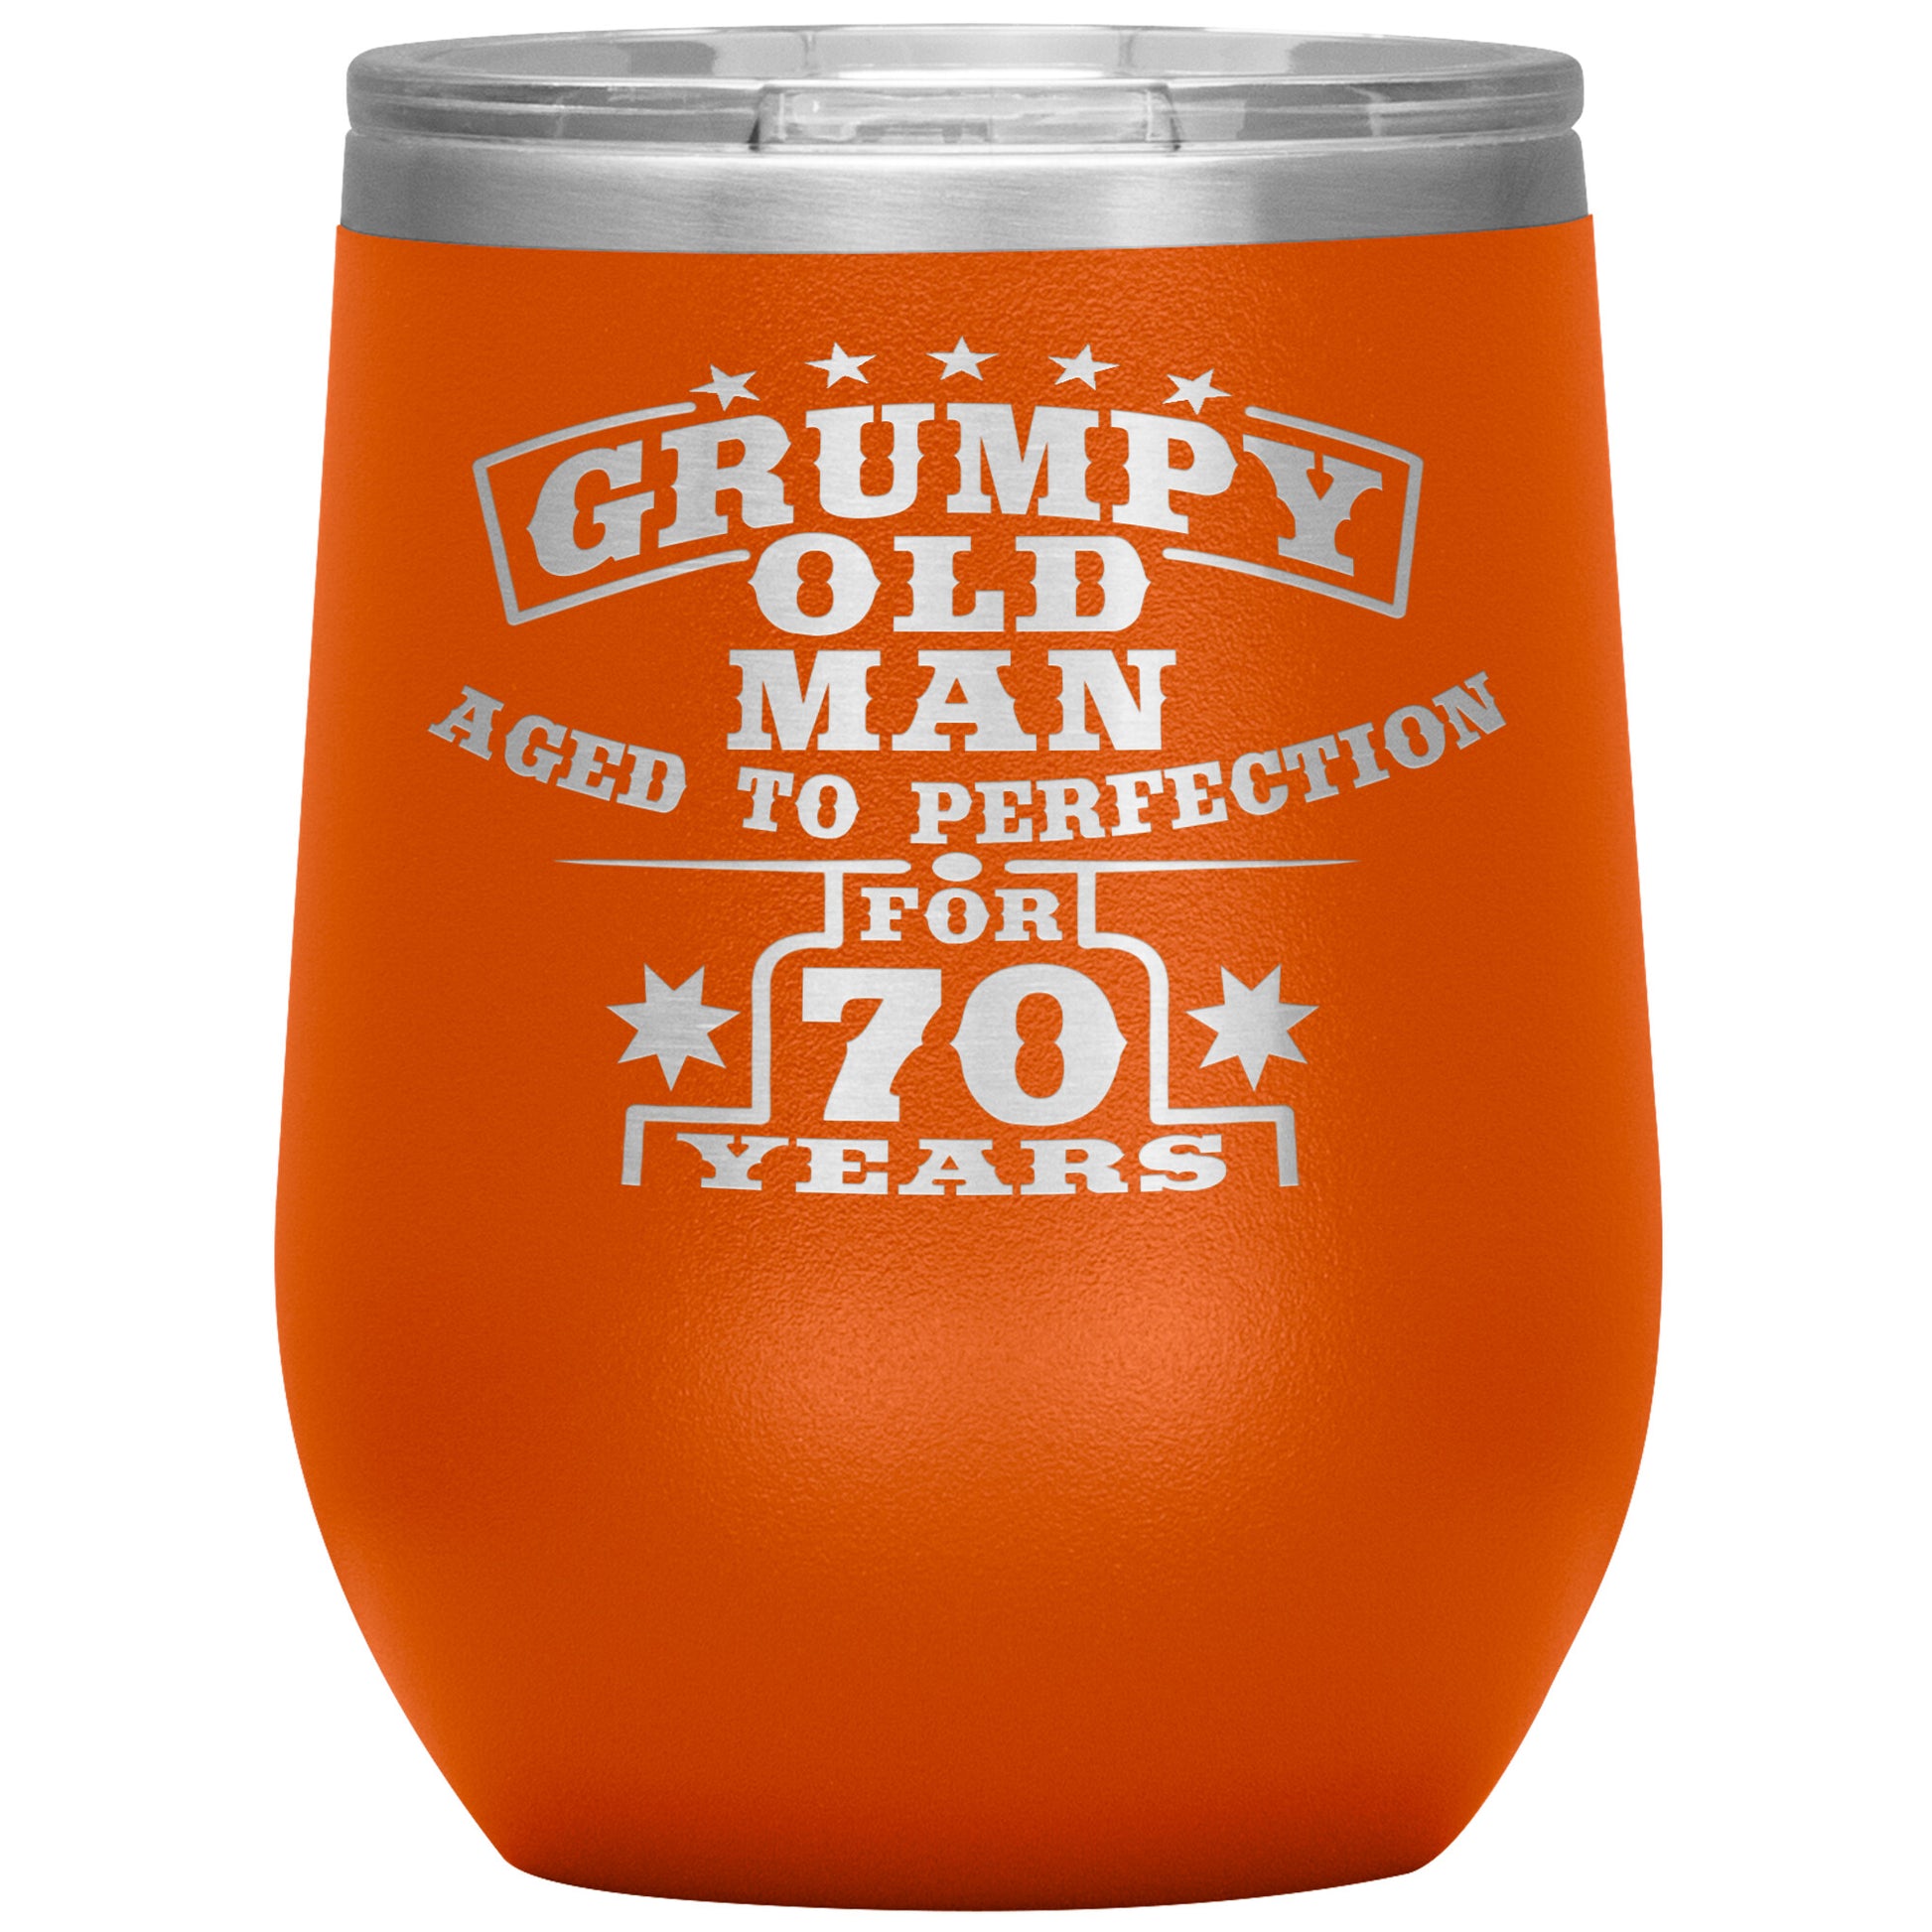 Grumpy Old Man - 70th Birthday Tumbler